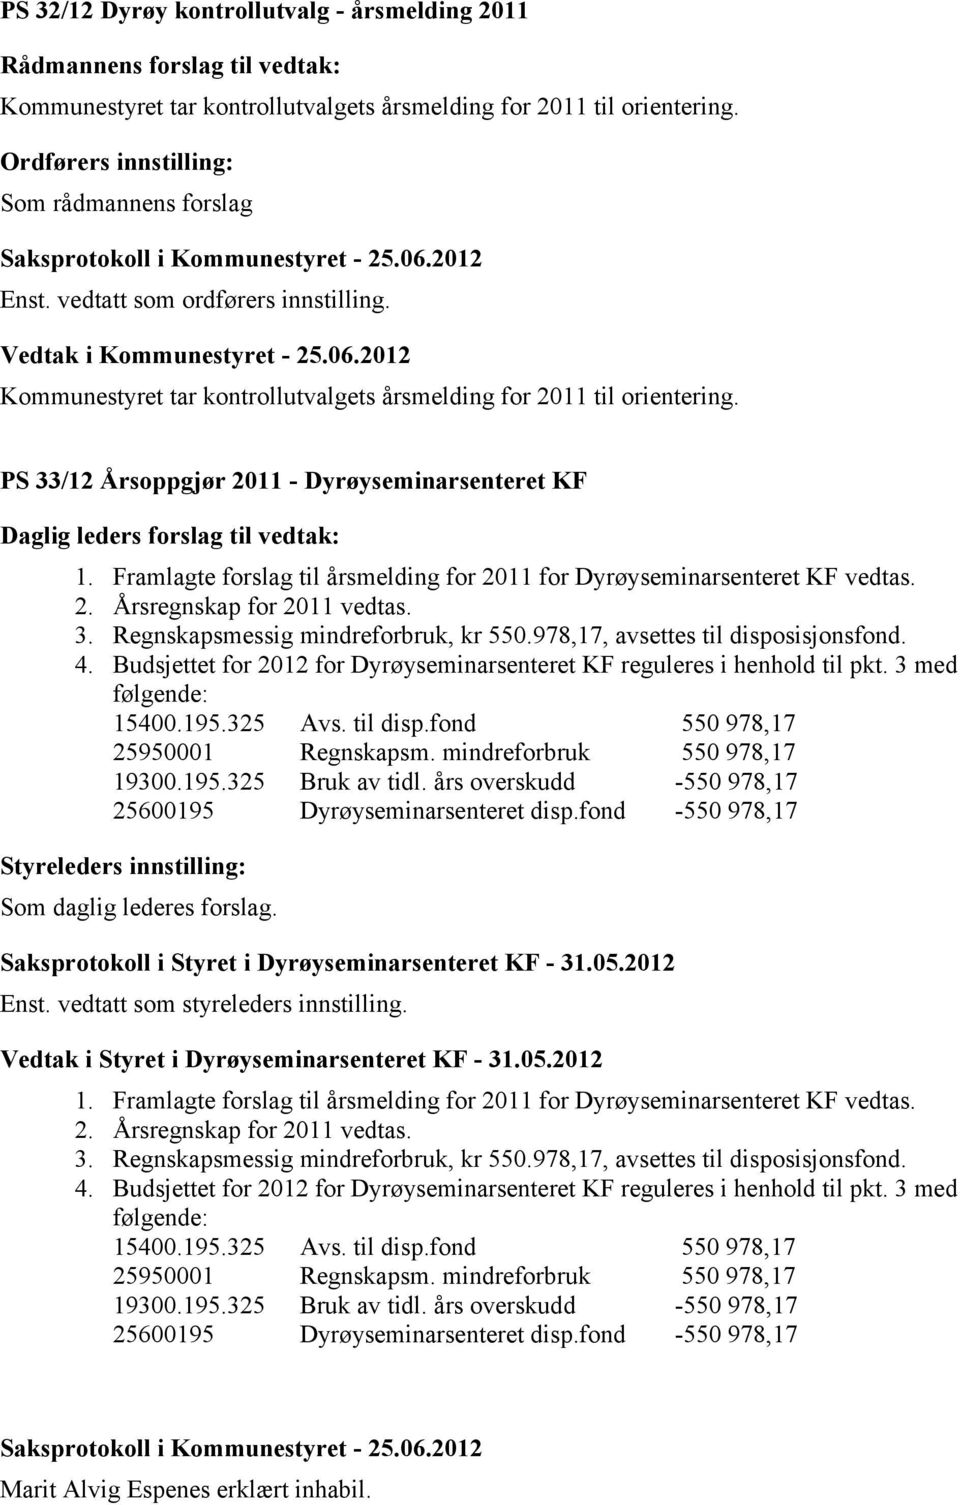 Framlagte forslag til årsmelding for 2011 for Dyrøyseminarsenteret KF vedtas. 2. Årsregnskap for 2011 vedtas. 3. Regnskapsmessig mindreforbruk, kr 550.978,17, avsettes til disposisjonsfond. 4.